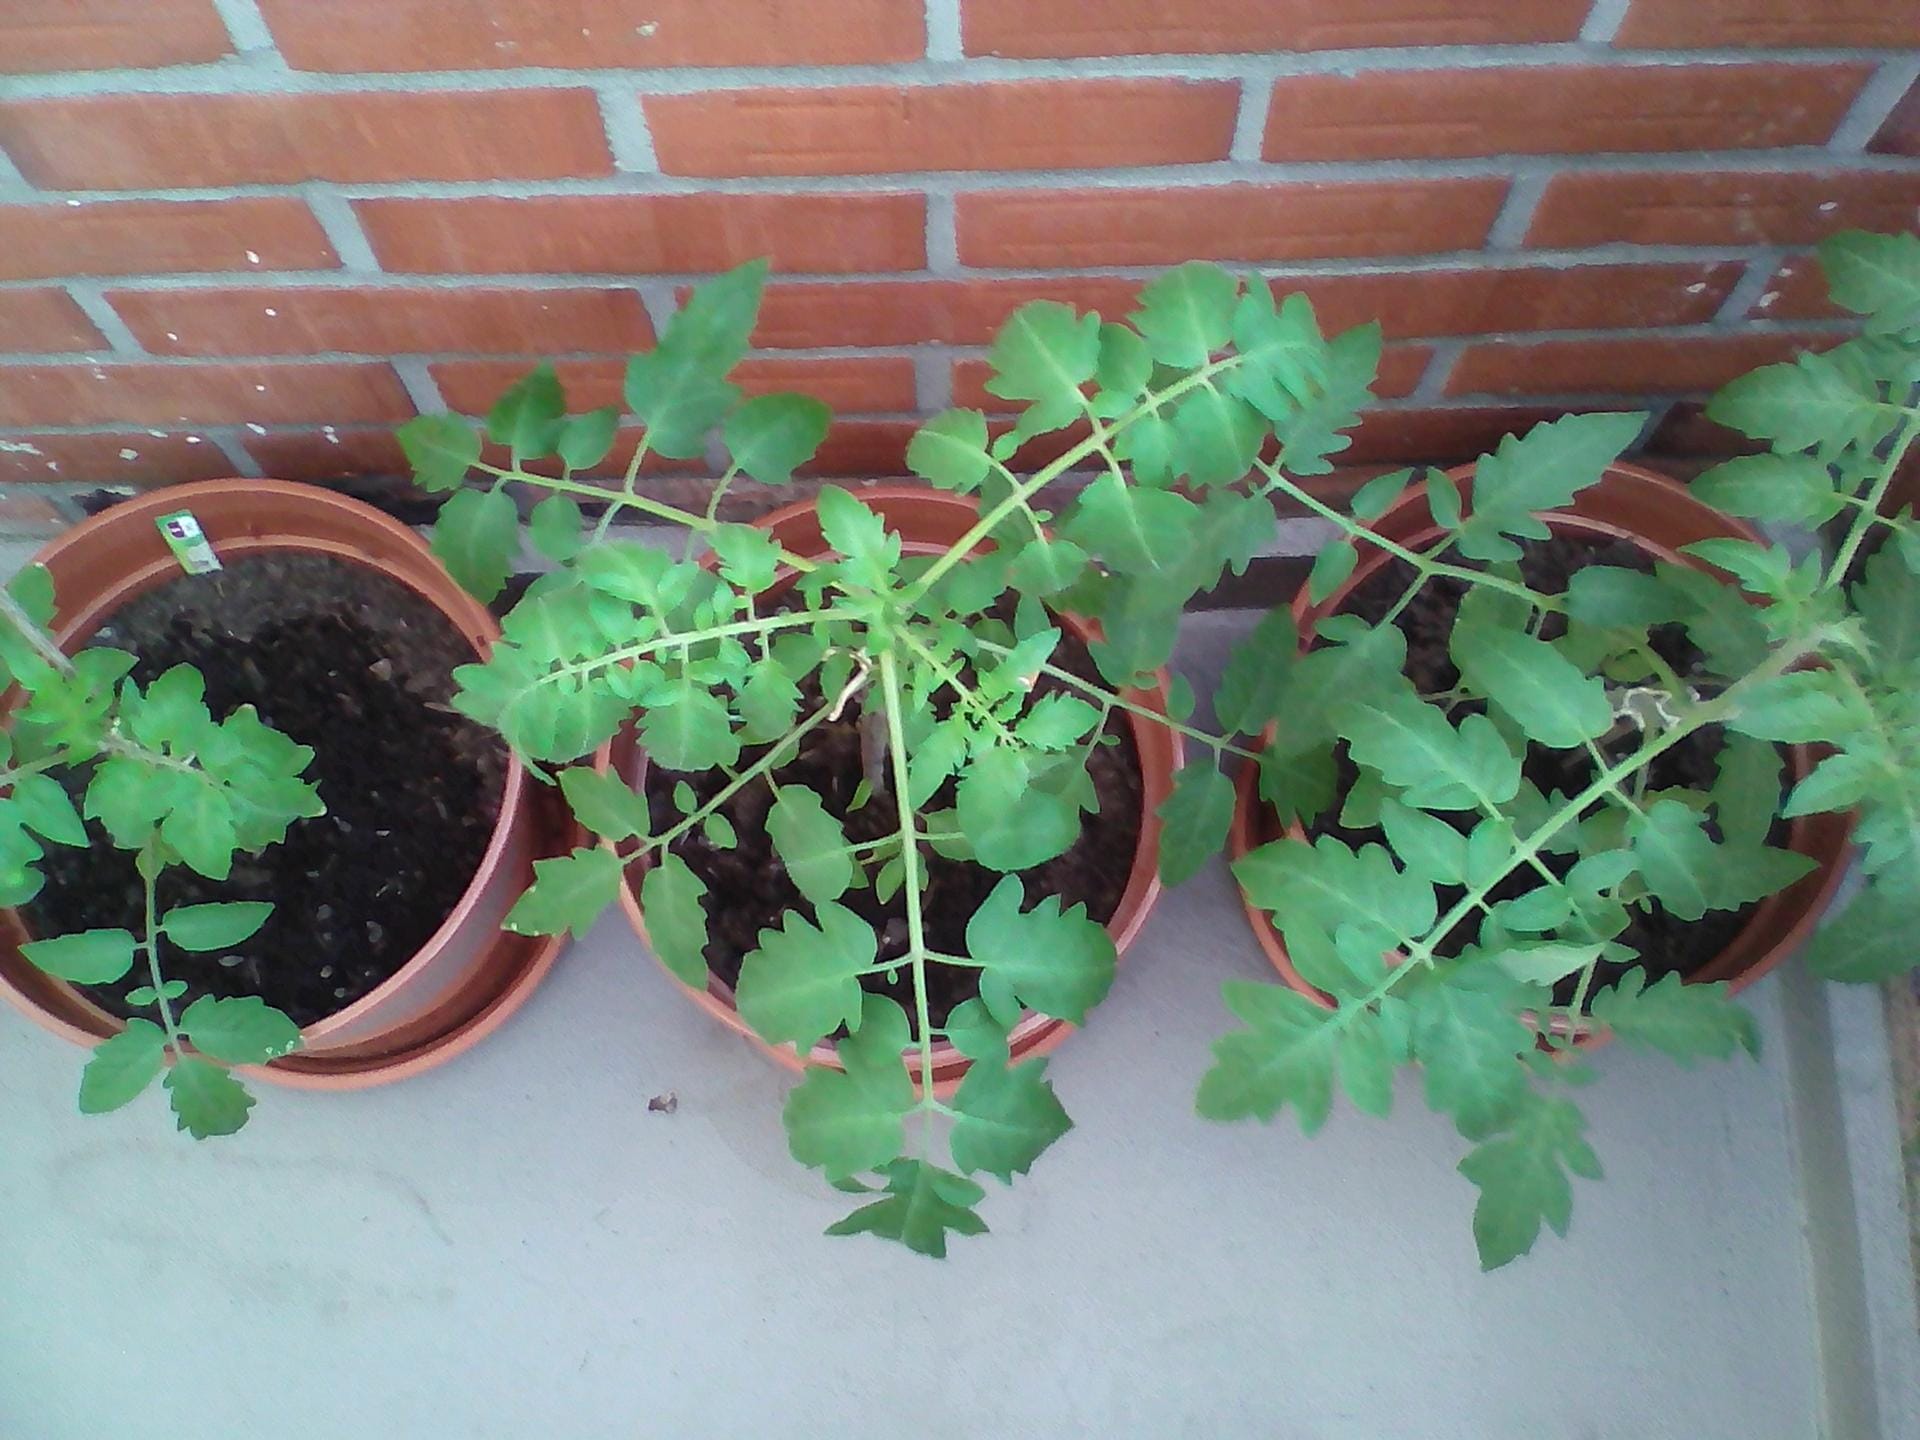 Tomaten in Kübeln: Lidl Tomate (links), Sperli Bio-Tomate (mittig) und Kiepenkerl Tomate (rechts) zweieinhalb Wochen nach dem Auspflanzen.